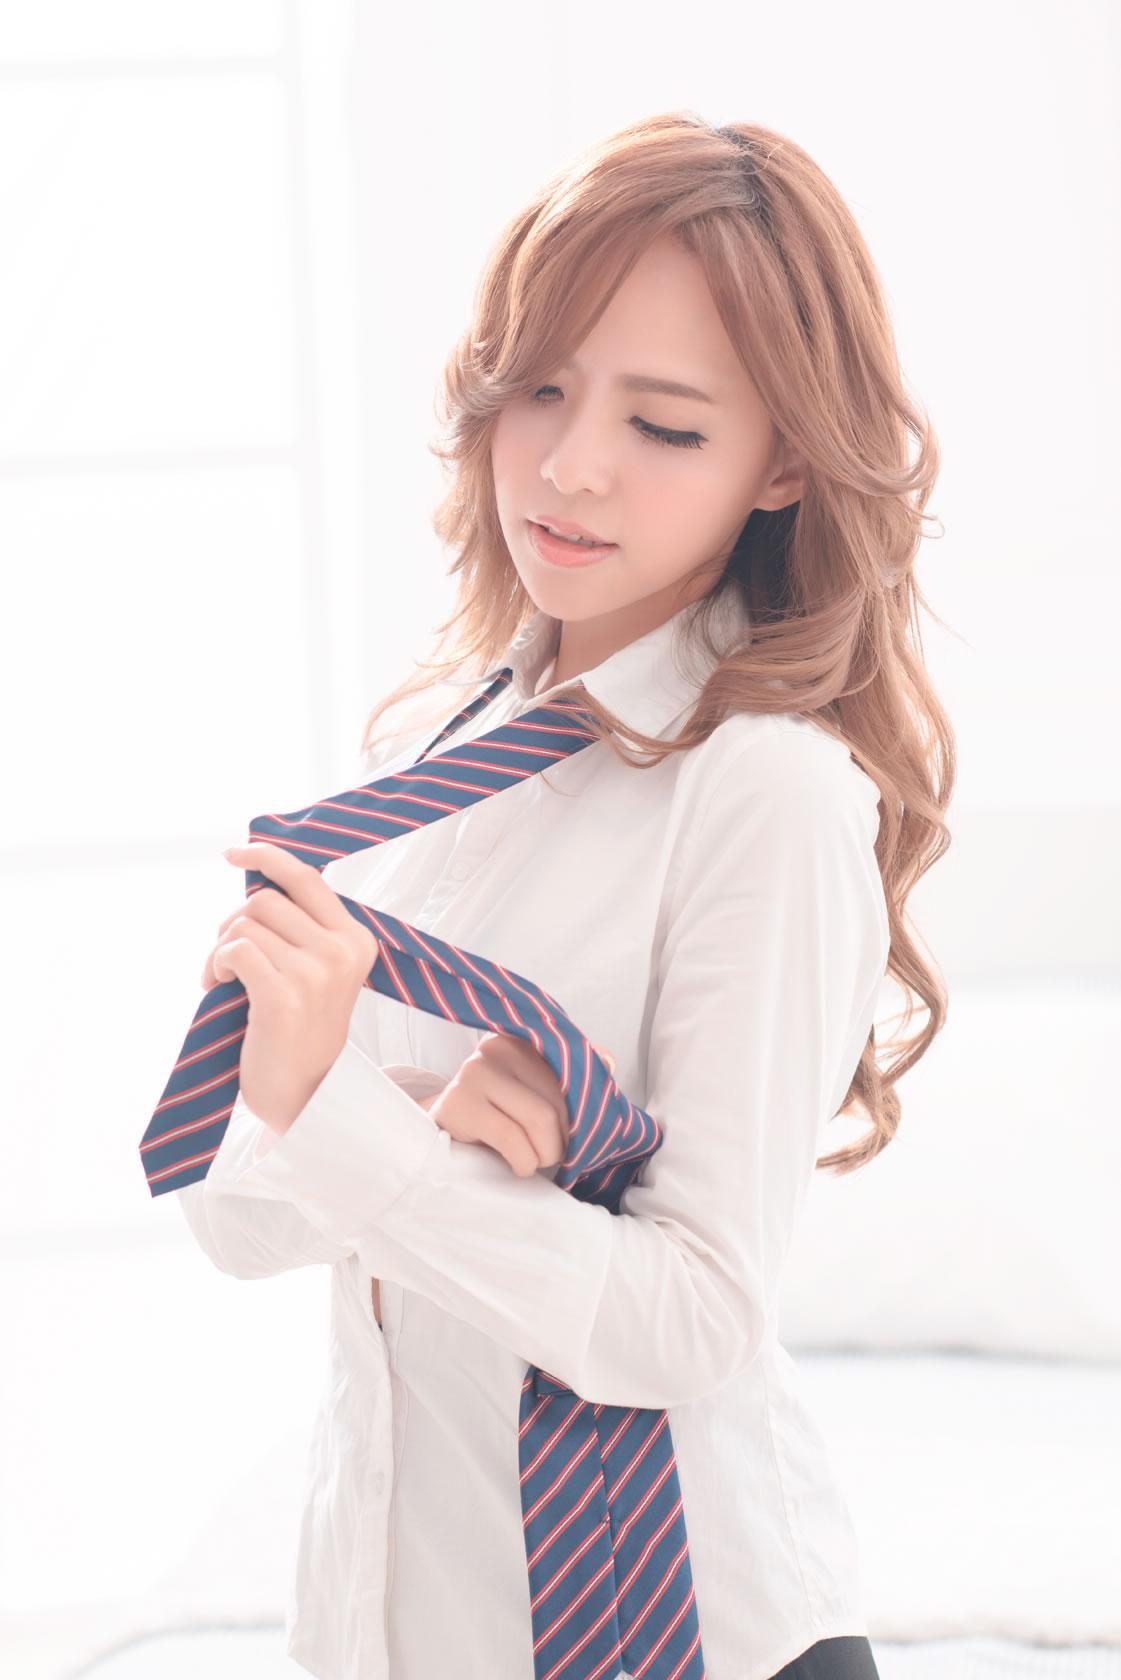 领带特辑台湾性感美女Kitty老师教你系领带,领带特辑台湾性感美女Kitty老师教你系领带